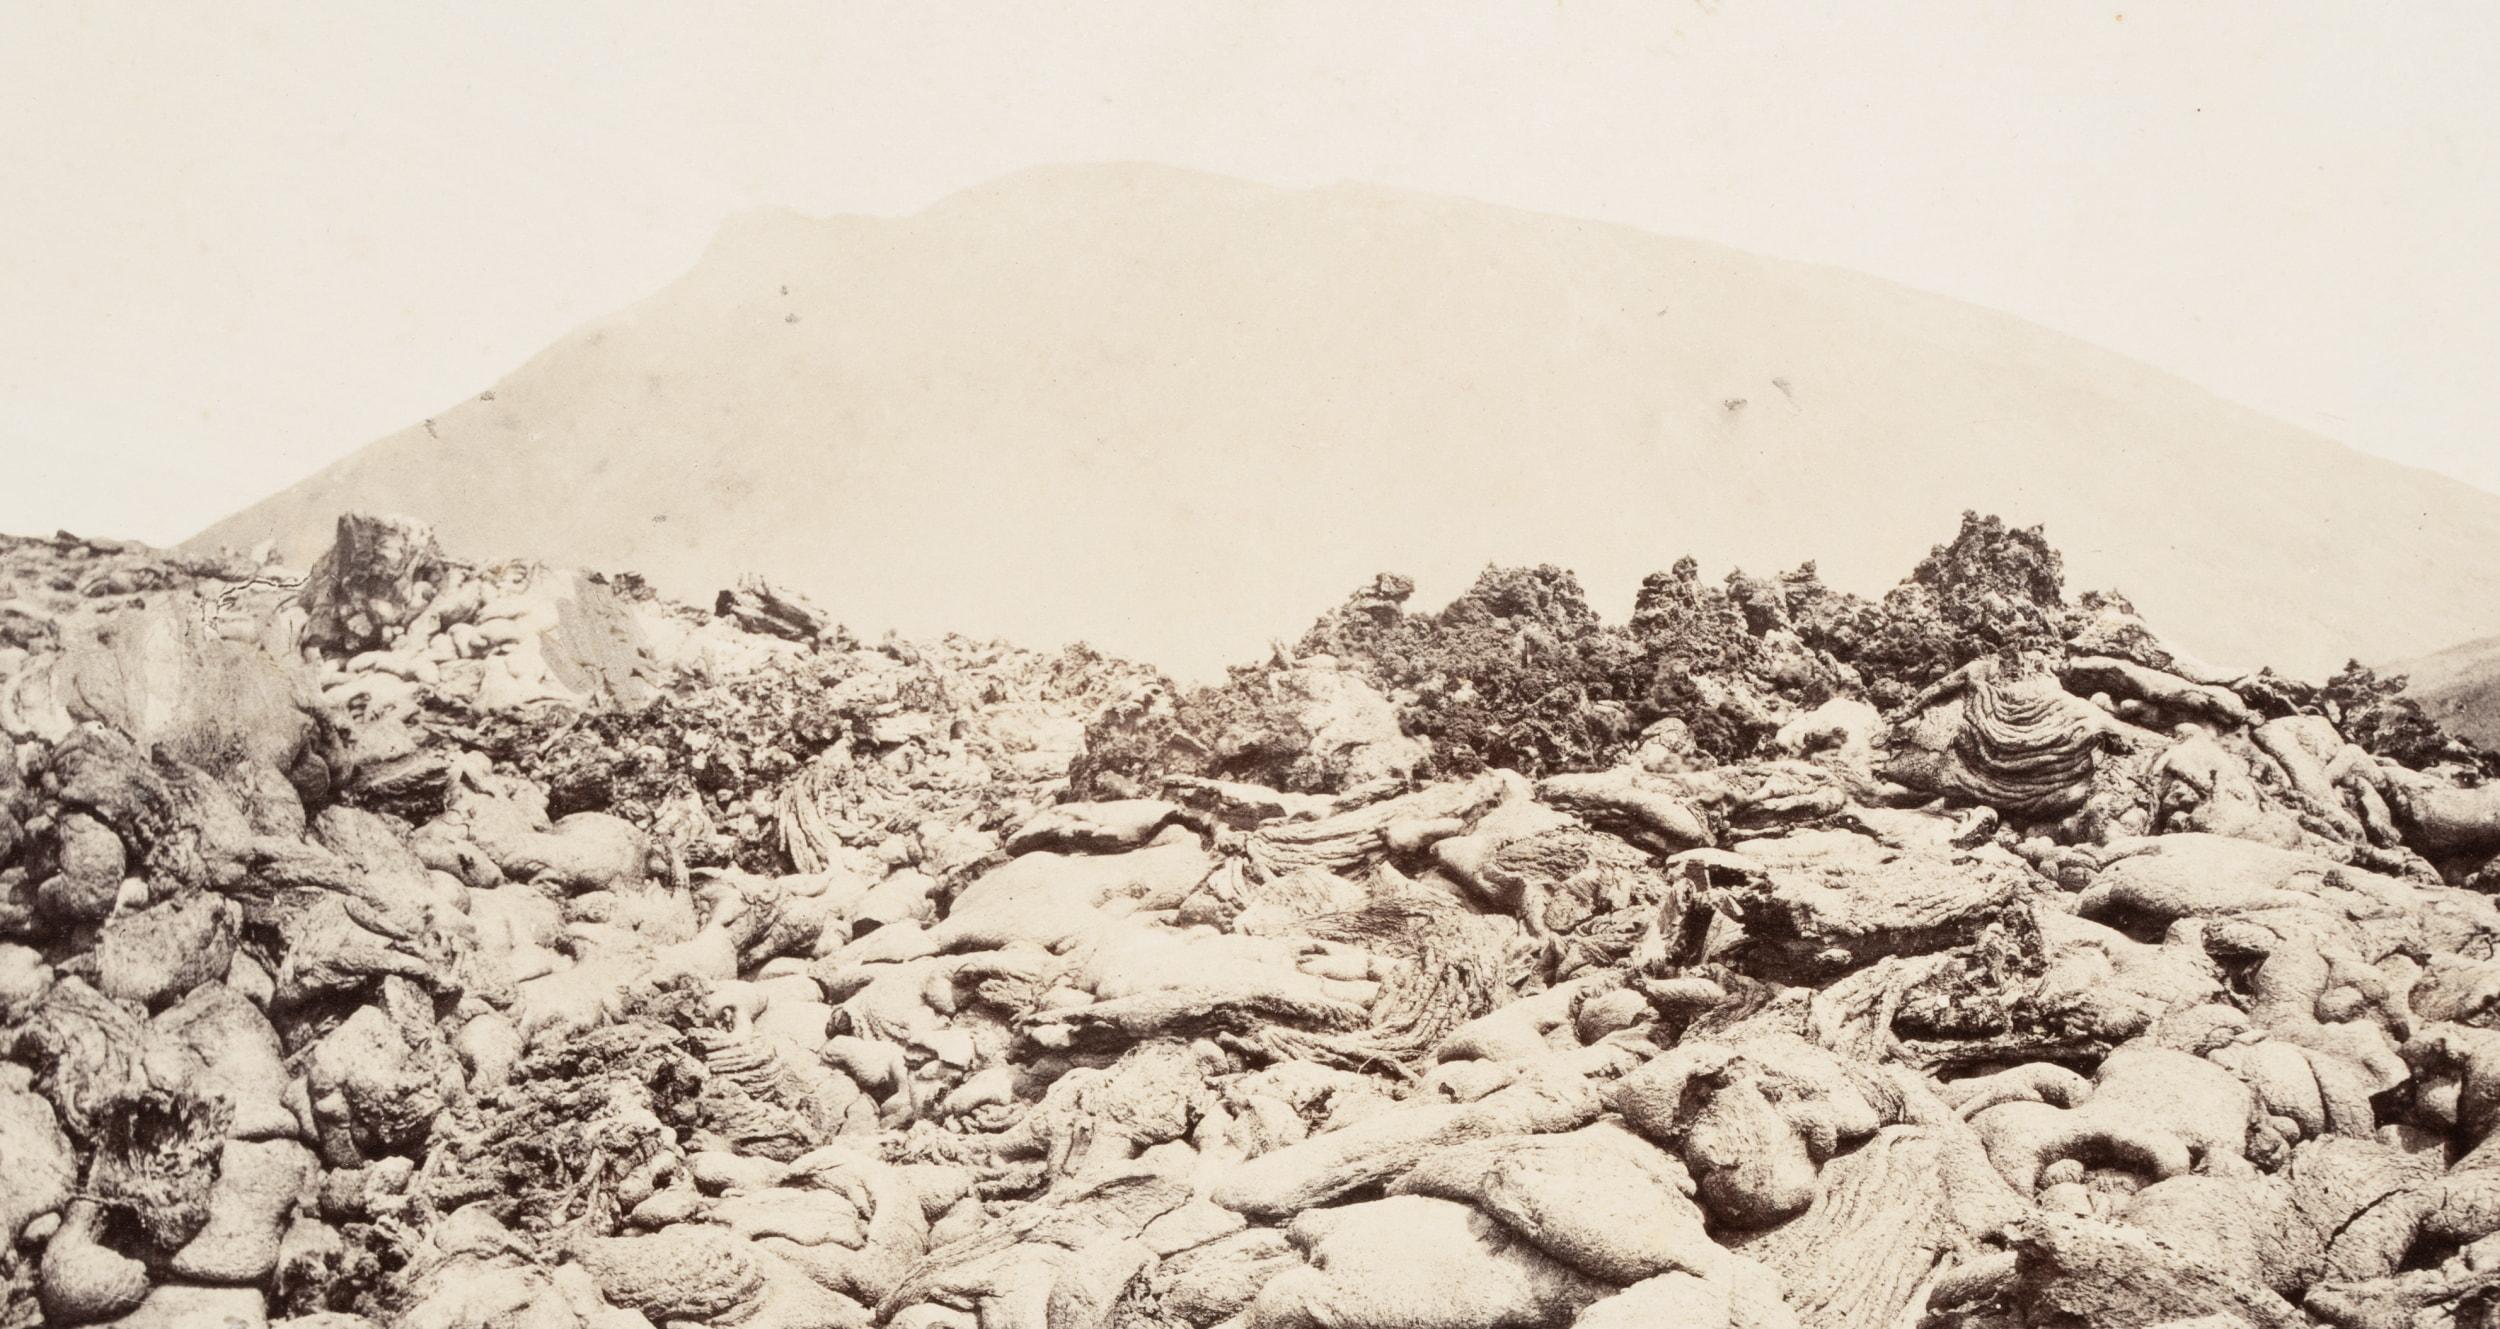 Sommet de la montagne avec la lave du Vésuve - Photograph de Unknown